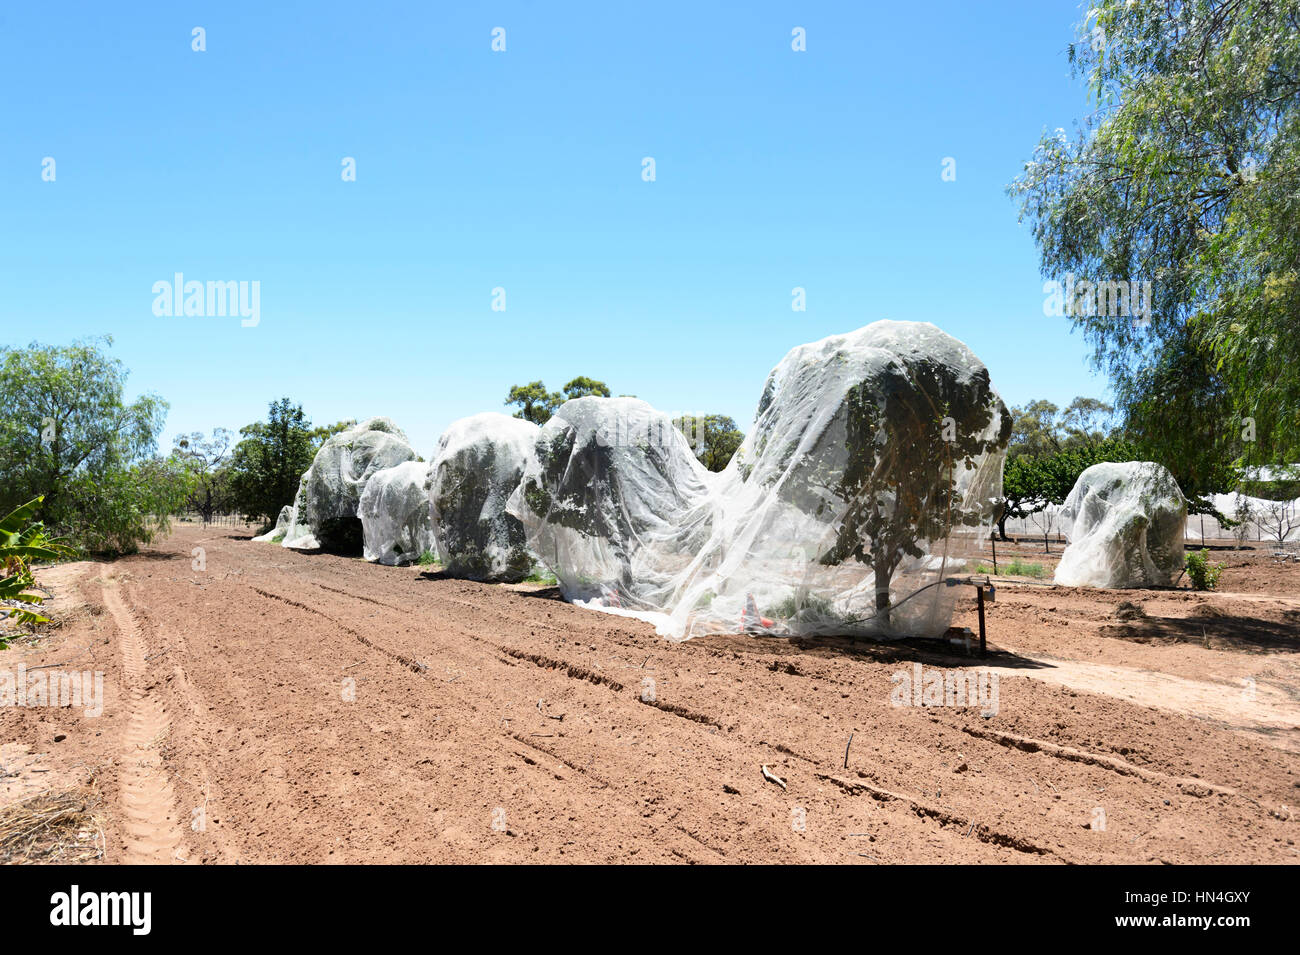 Gli alberi di agrumi con reti proteggendoli da uccelli, stazione Bindara, Nuovo Galles del Sud, Australia Foto Stock